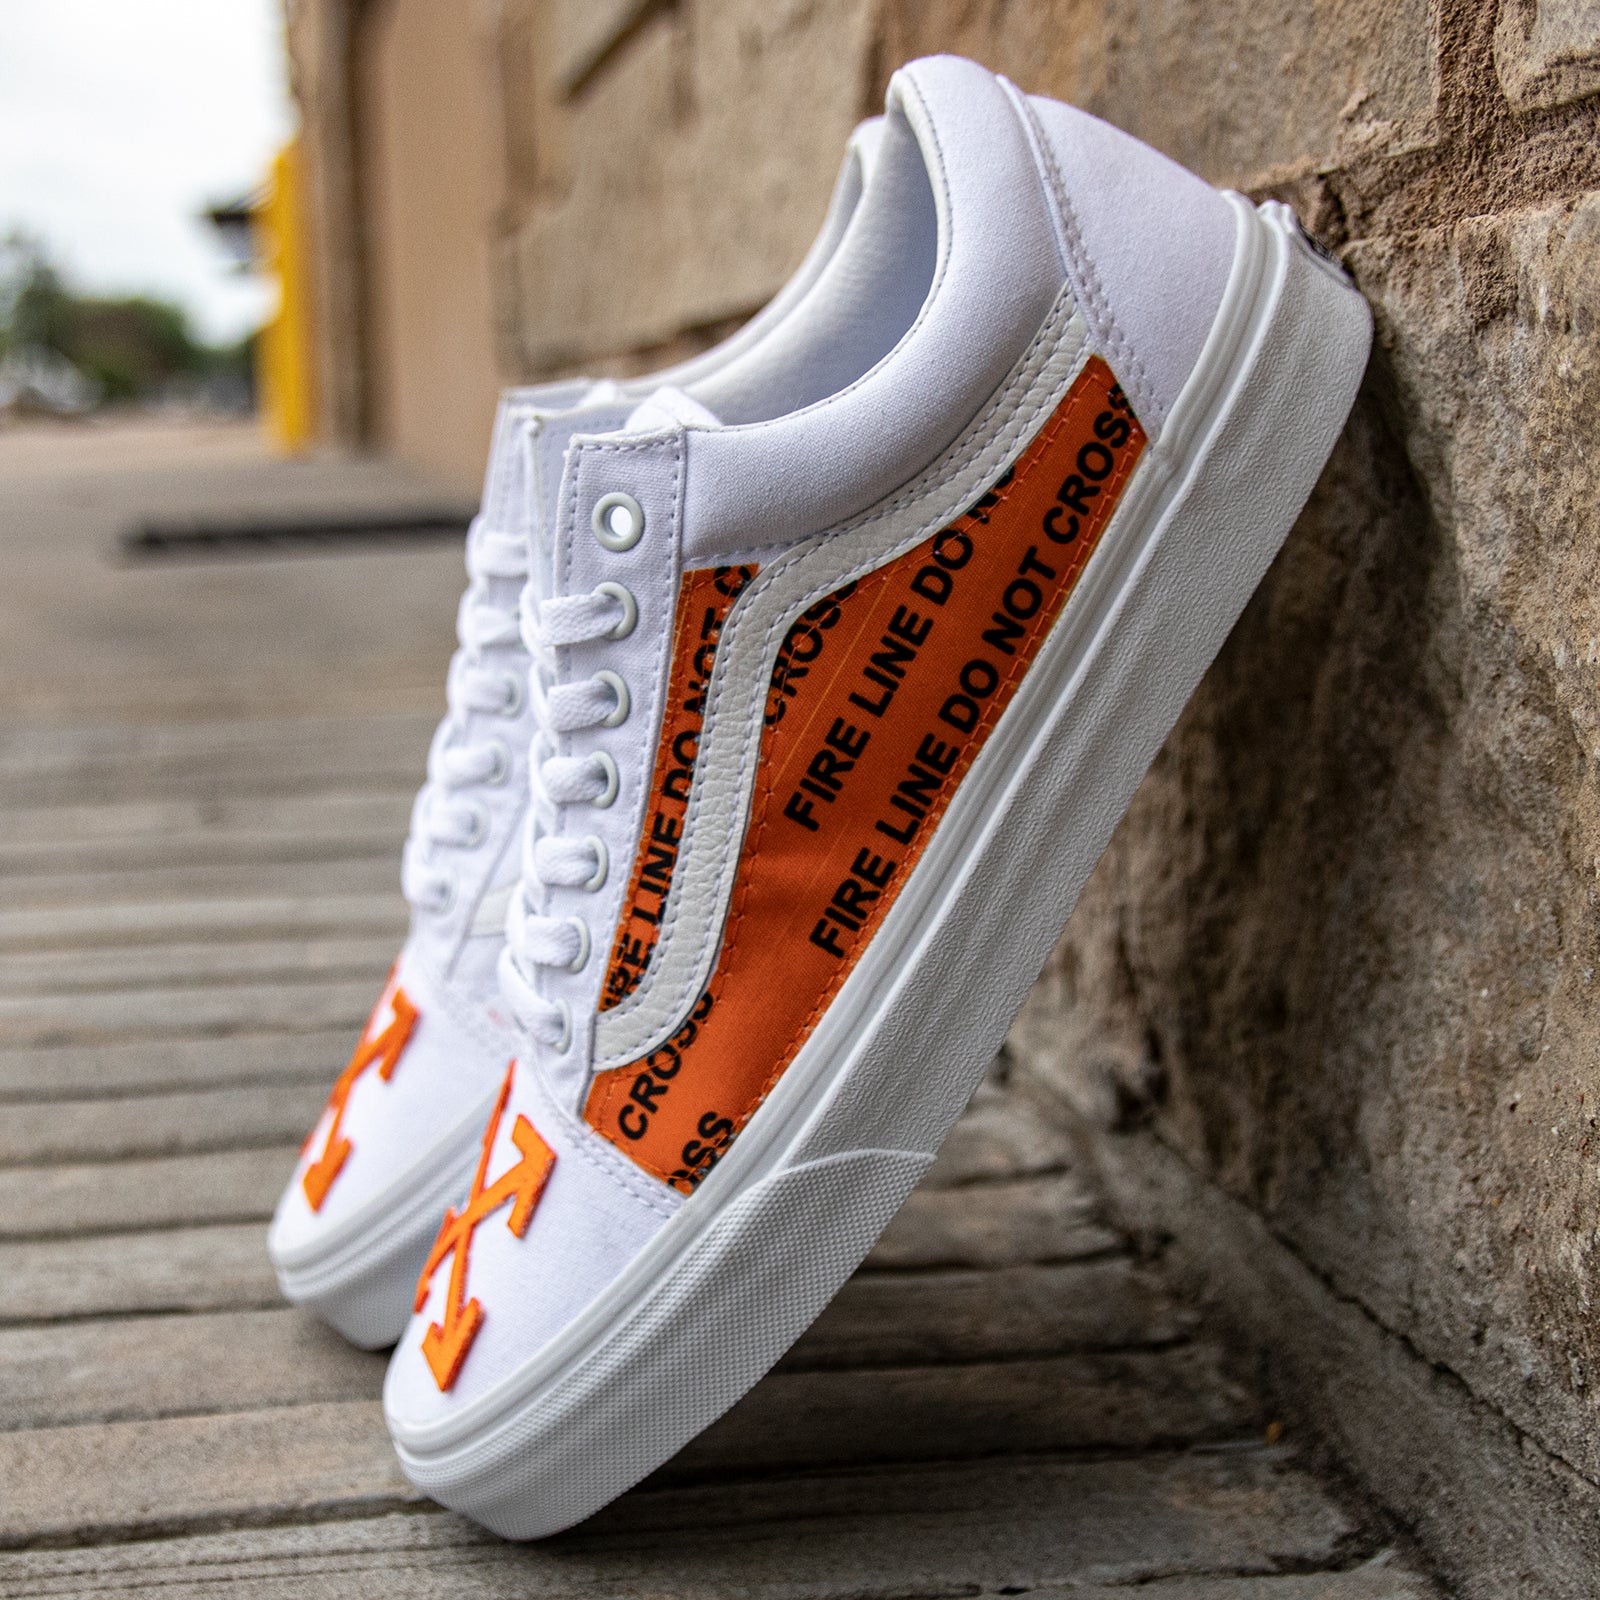 White Vans Old Skool x OFF White Orange Custom Handmade Shoes 